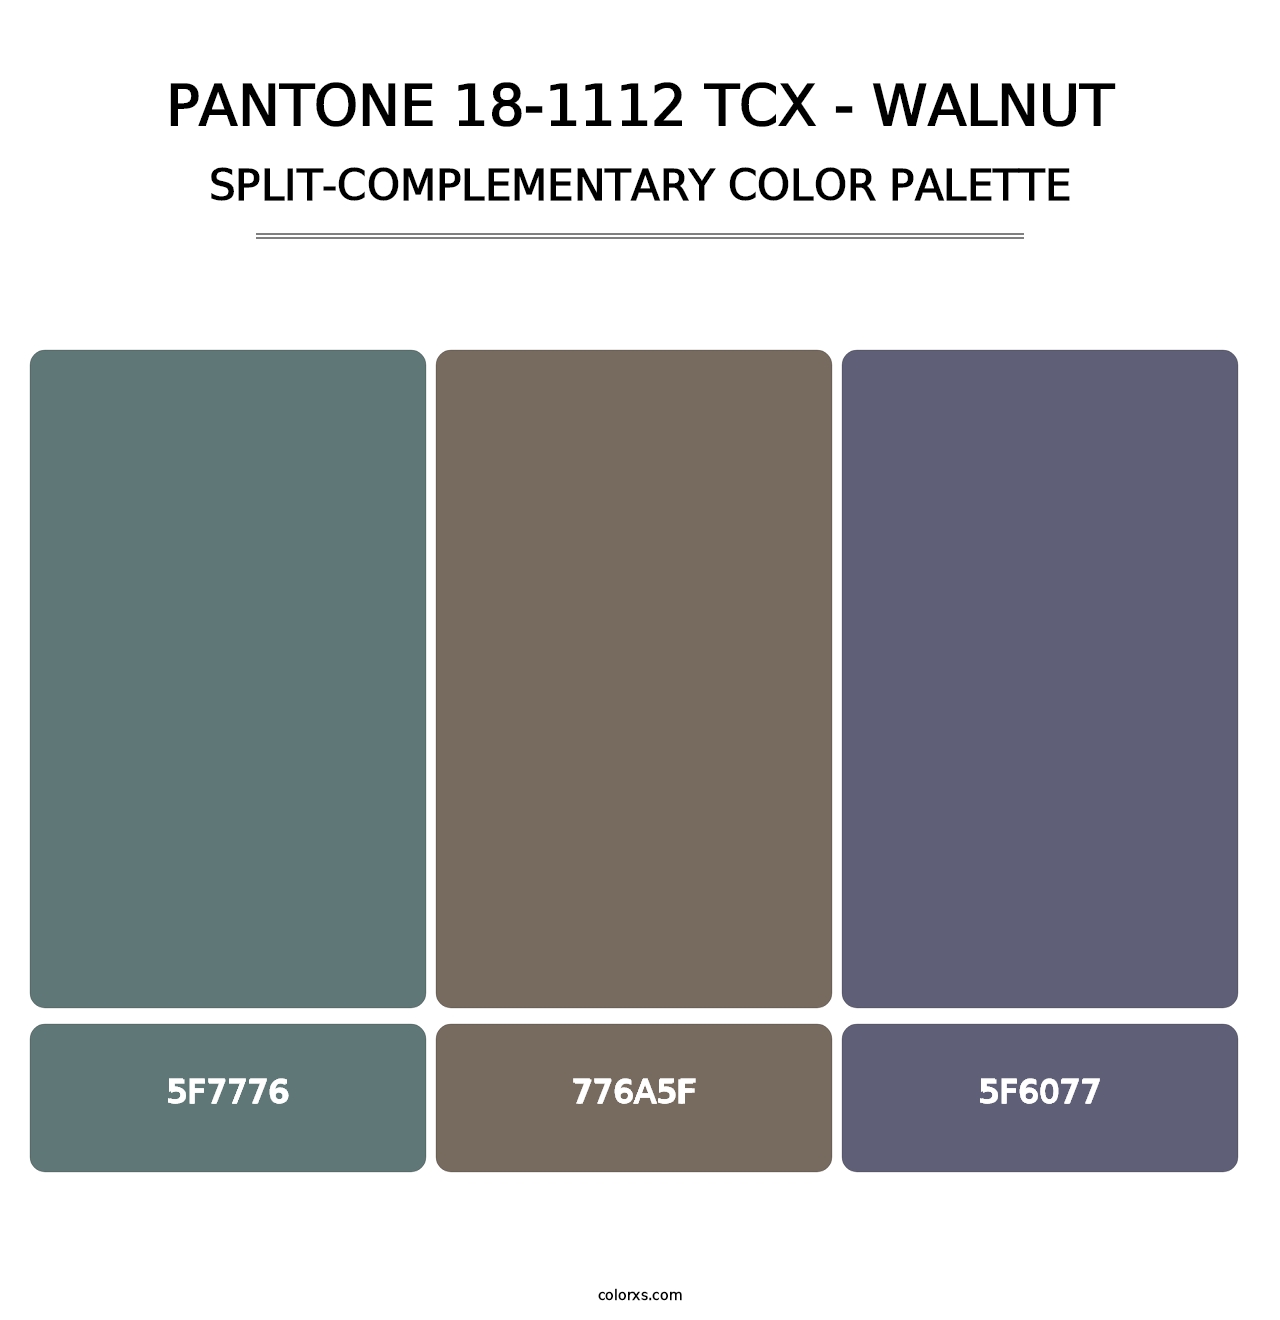 PANTONE 18-1112 TCX - Walnut - Split-Complementary Color Palette